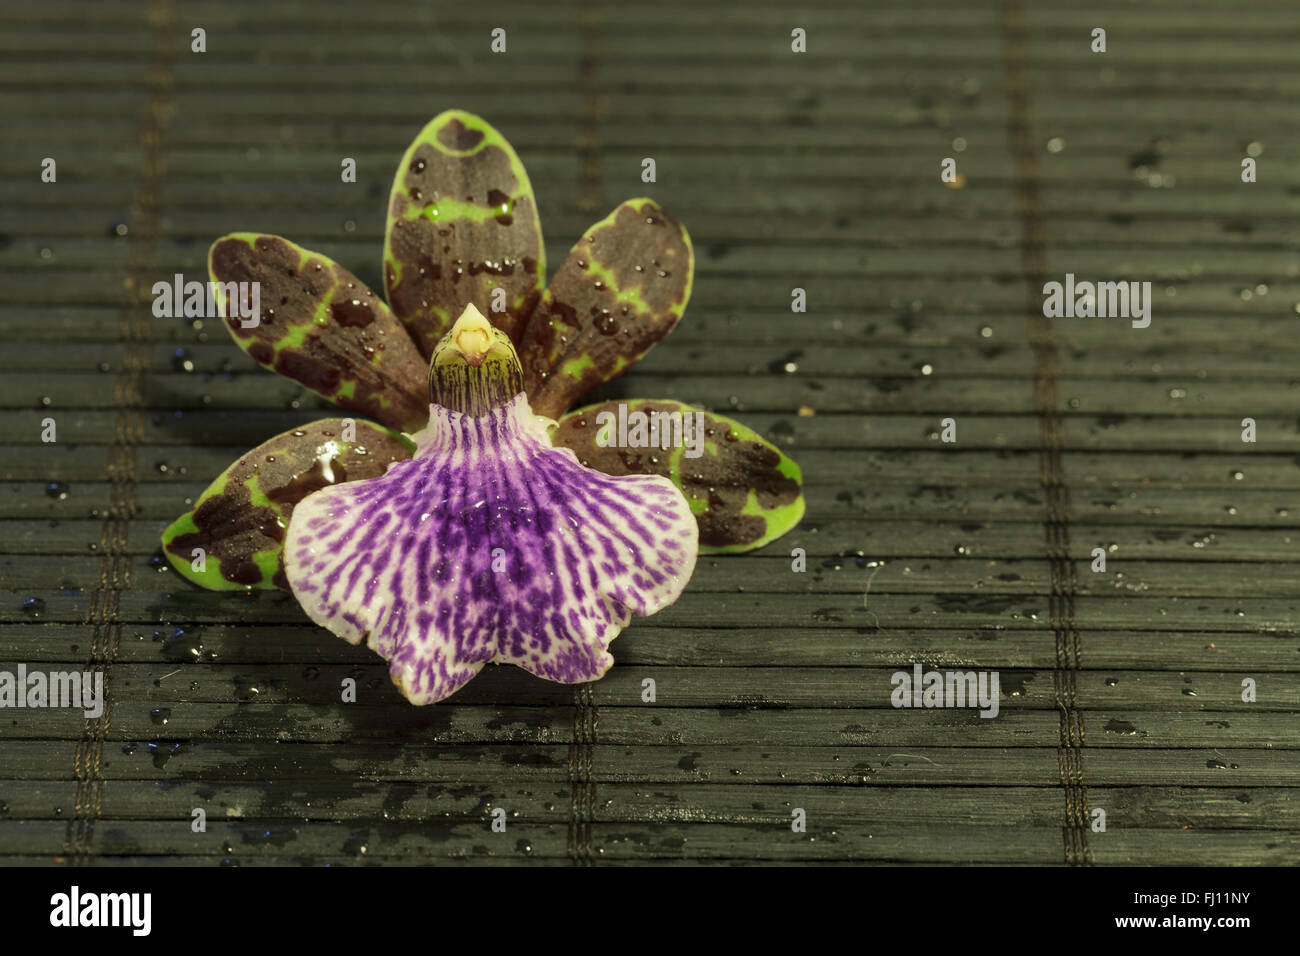 Orchidée violet et vert, espèce d'orchidée Zygopetalum, sur un fond noir mat en bambou Banque D'Images